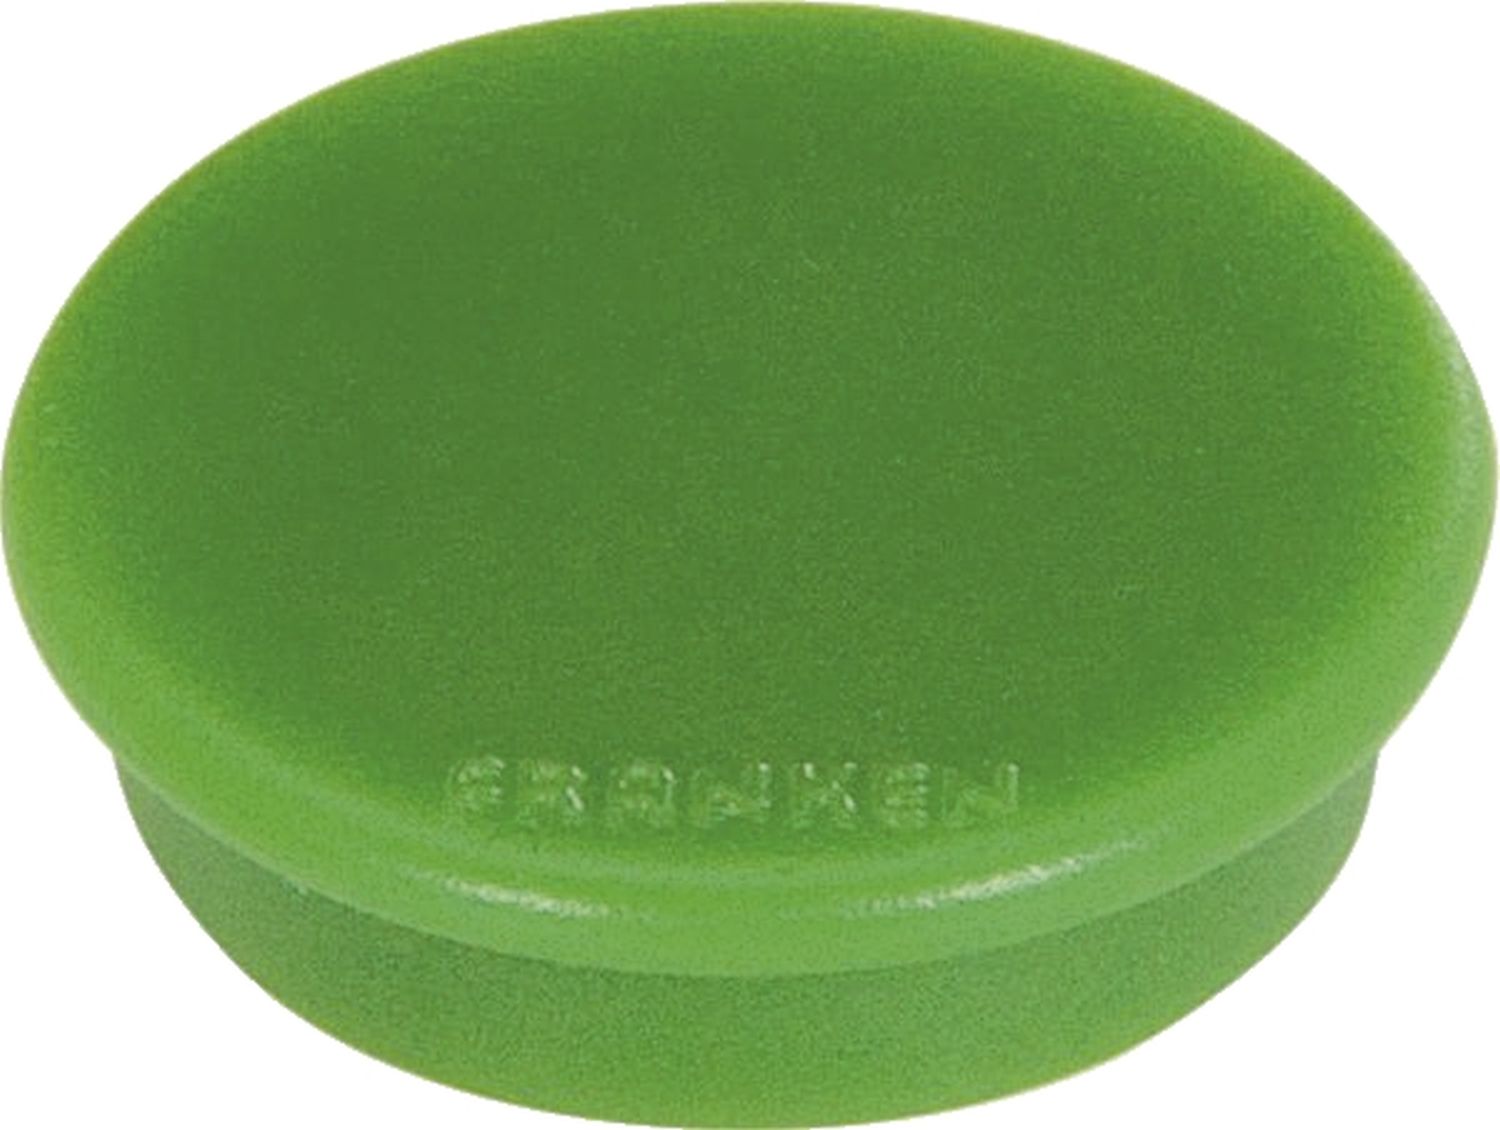 Kraftmagnet, 38 mm, 2500 g, grün